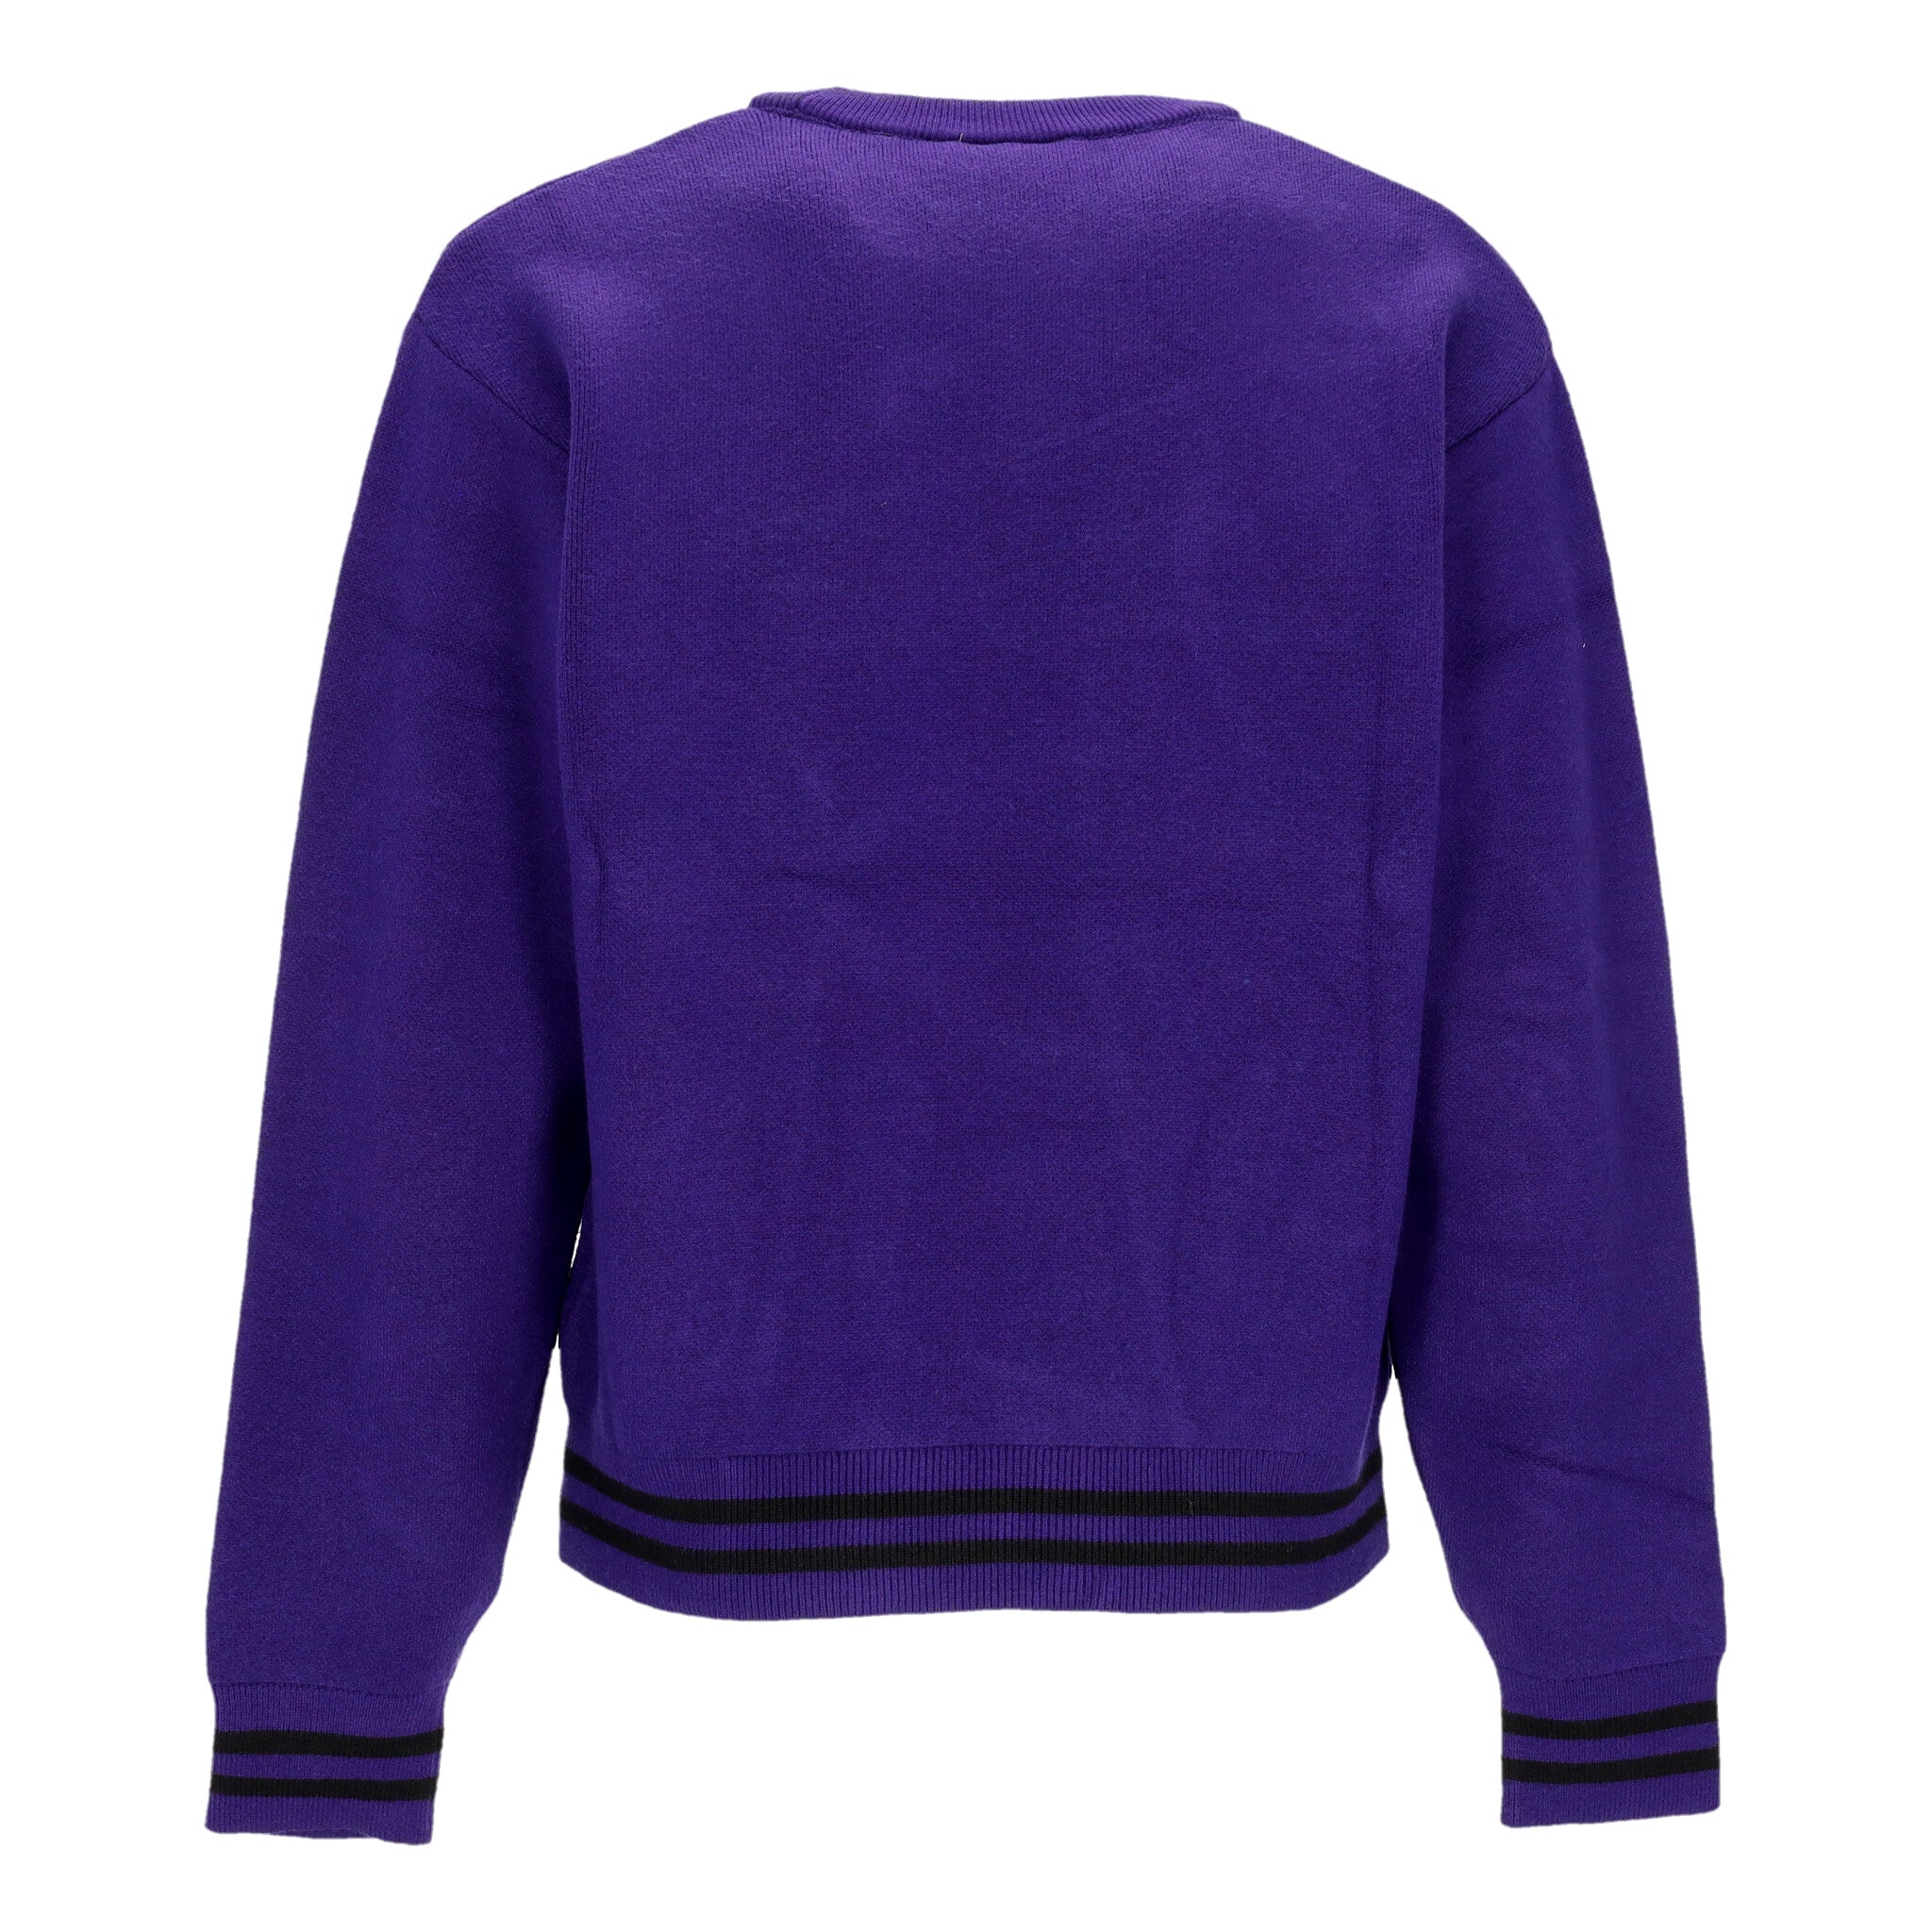 Maglione Uomo Onyx Sweater Tyrian/black I033562.1ZT